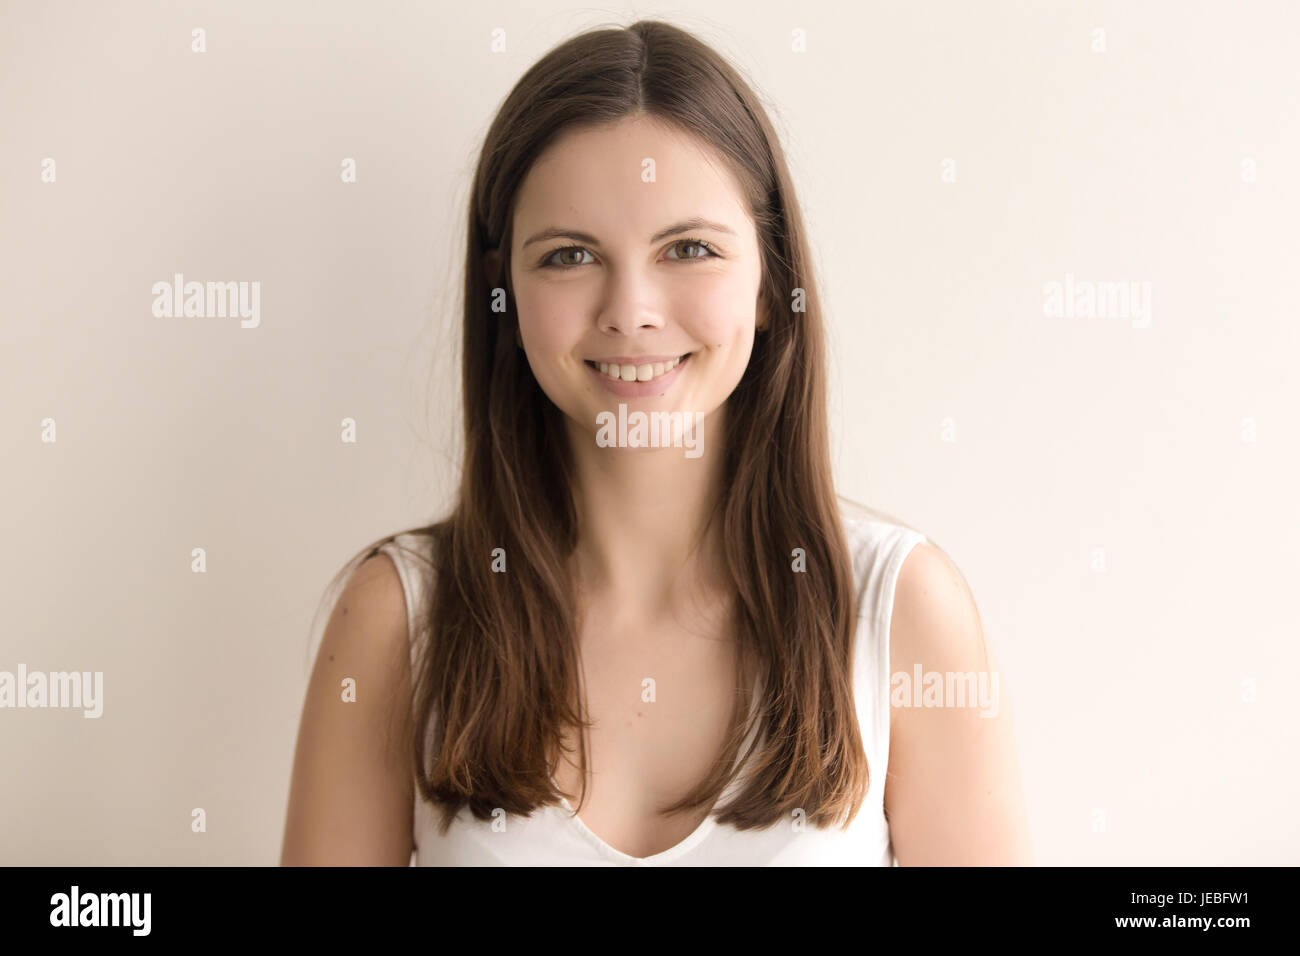 Emotionale Kopfschuss Porträt der fröhliche junge Frau Stockfoto